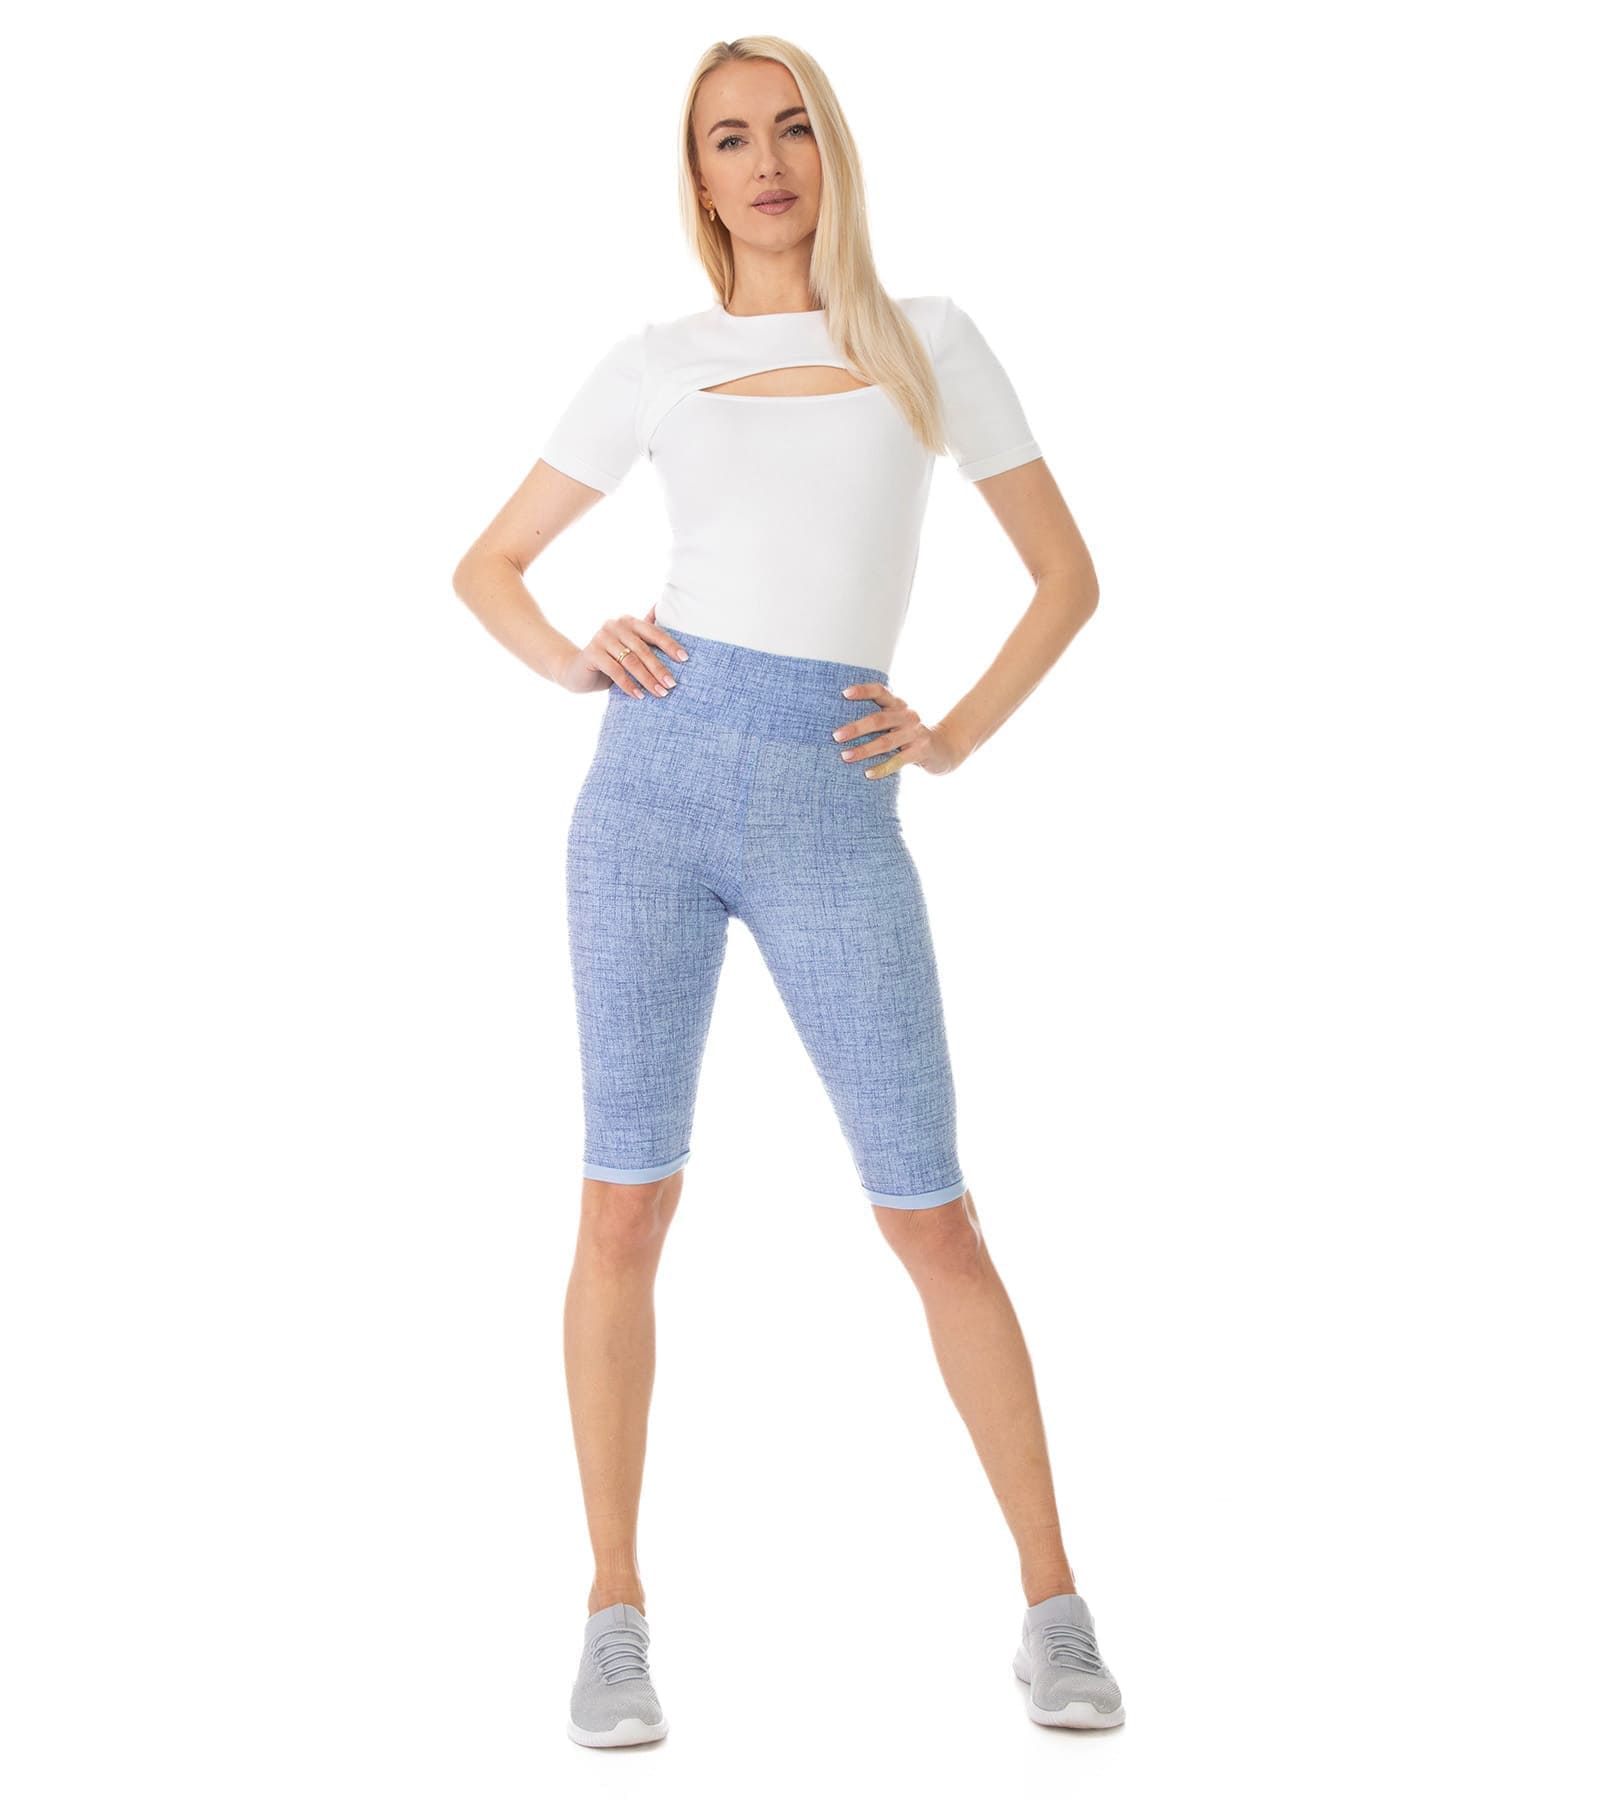 Krótkie legginsy damskie jasno niebieskie w nadruk imitujący jeans Amber Bensini